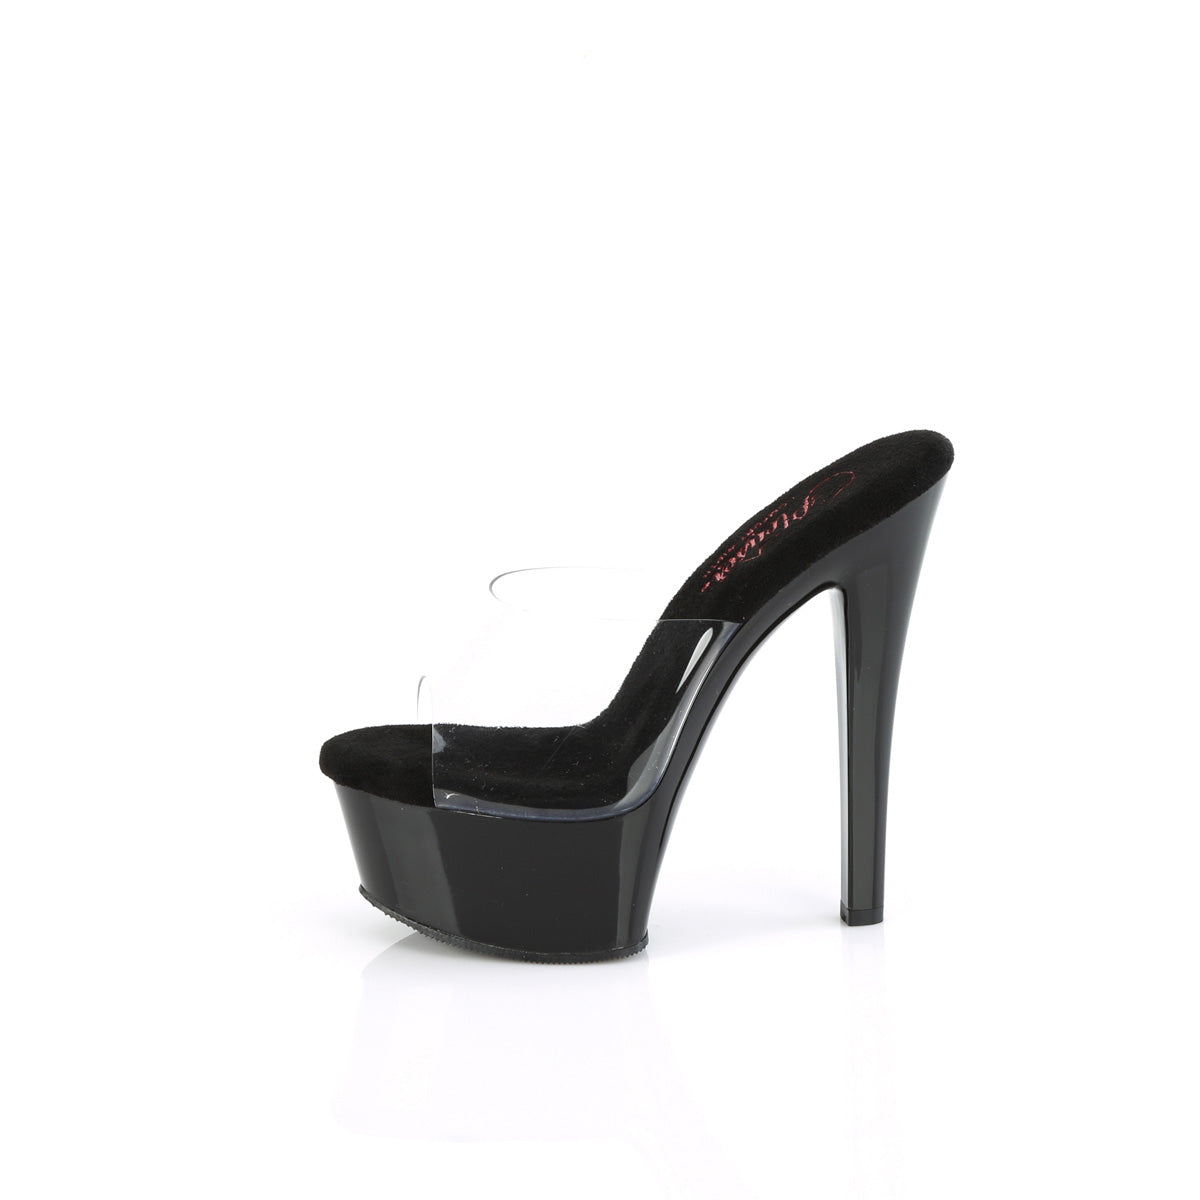 GLEAM-601 Pleaser Sexy Slip On 6 Inch High Heel Stripper Shoes